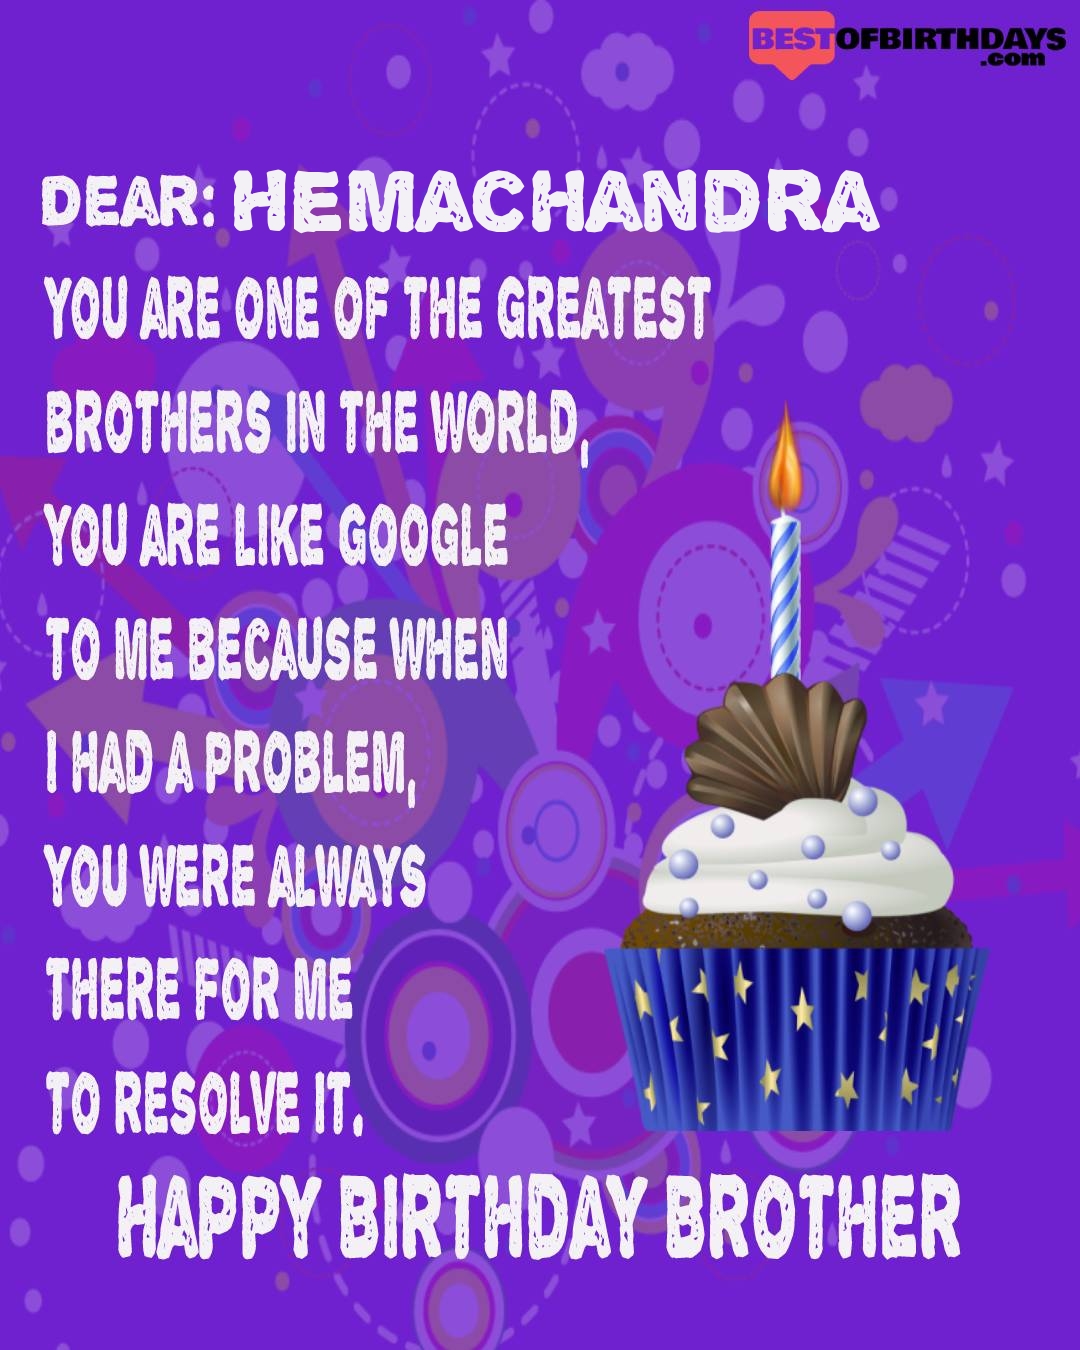 Happy birthday hemachandra bhai brother bro